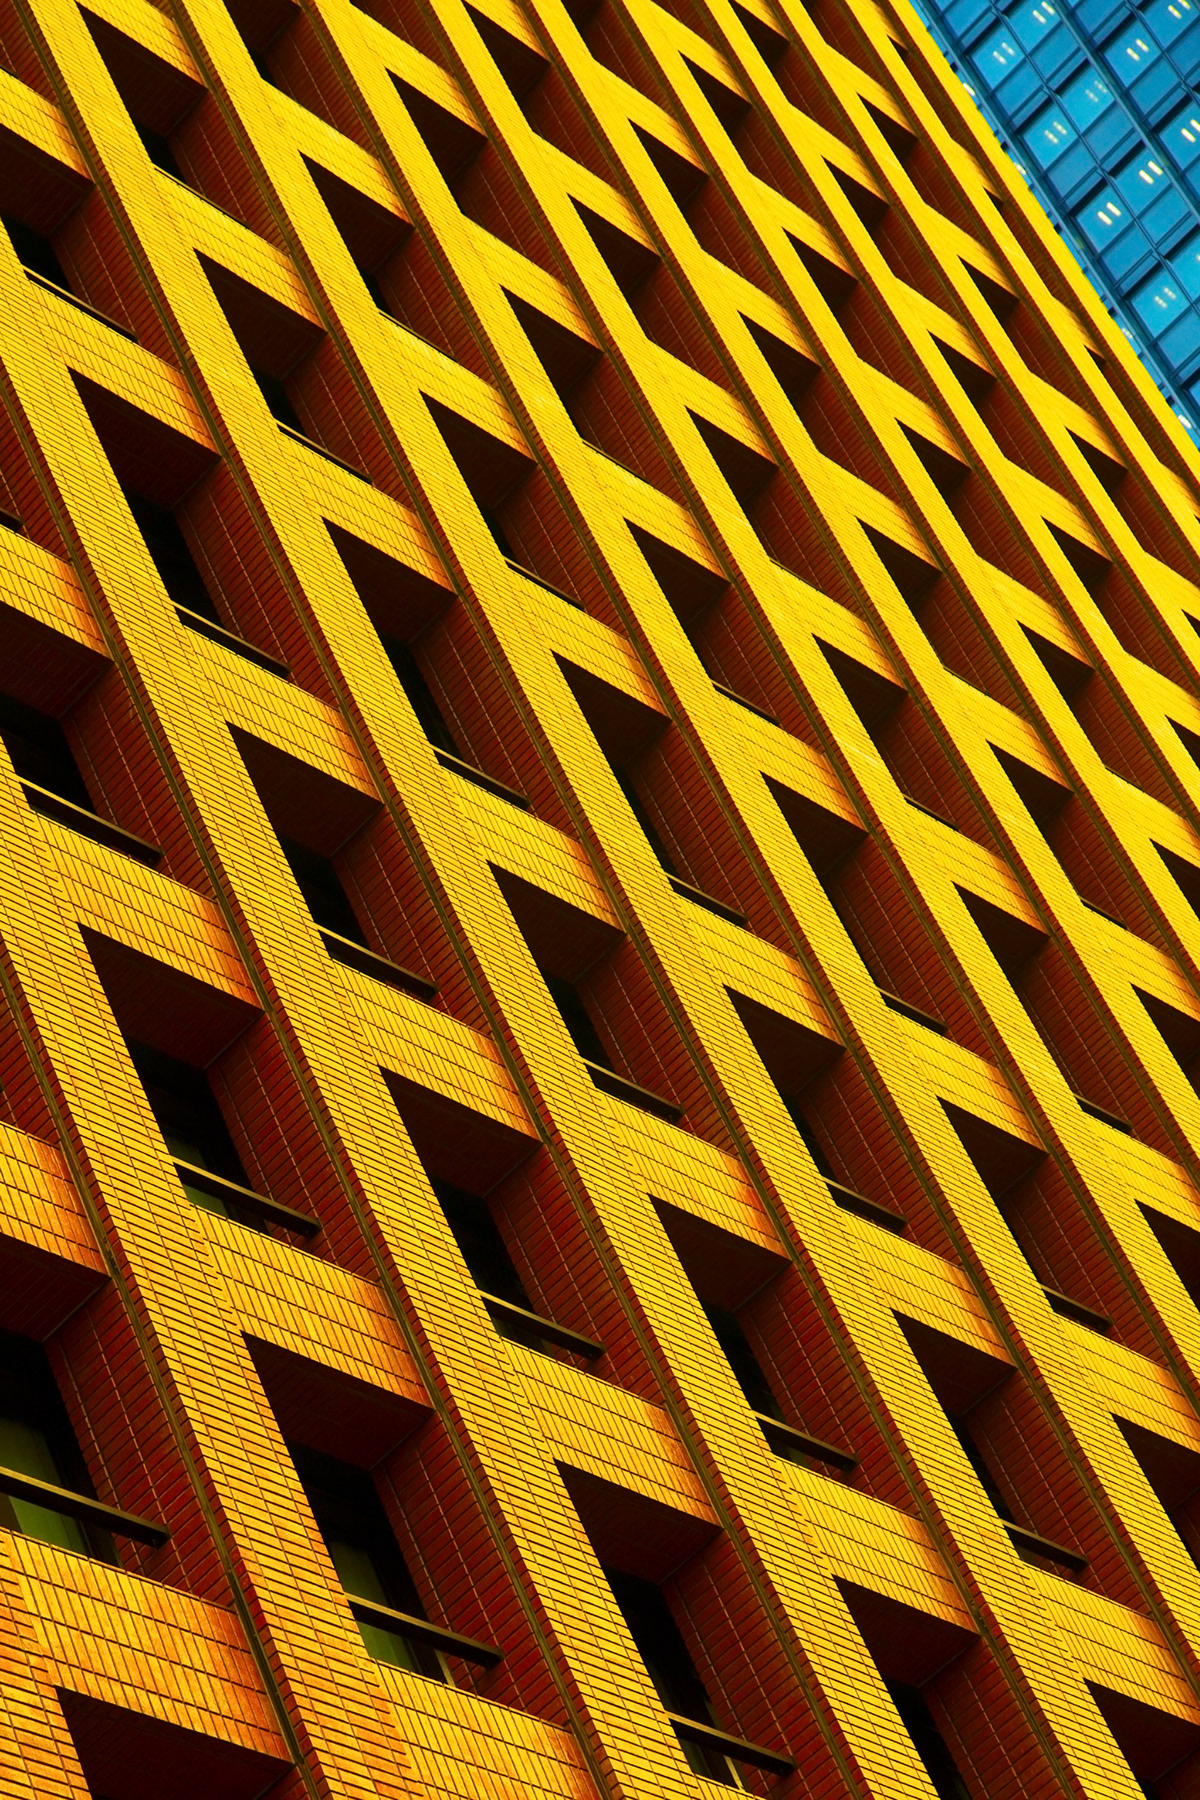 architecture building colours composition Harmony japan lines shapes squares windows